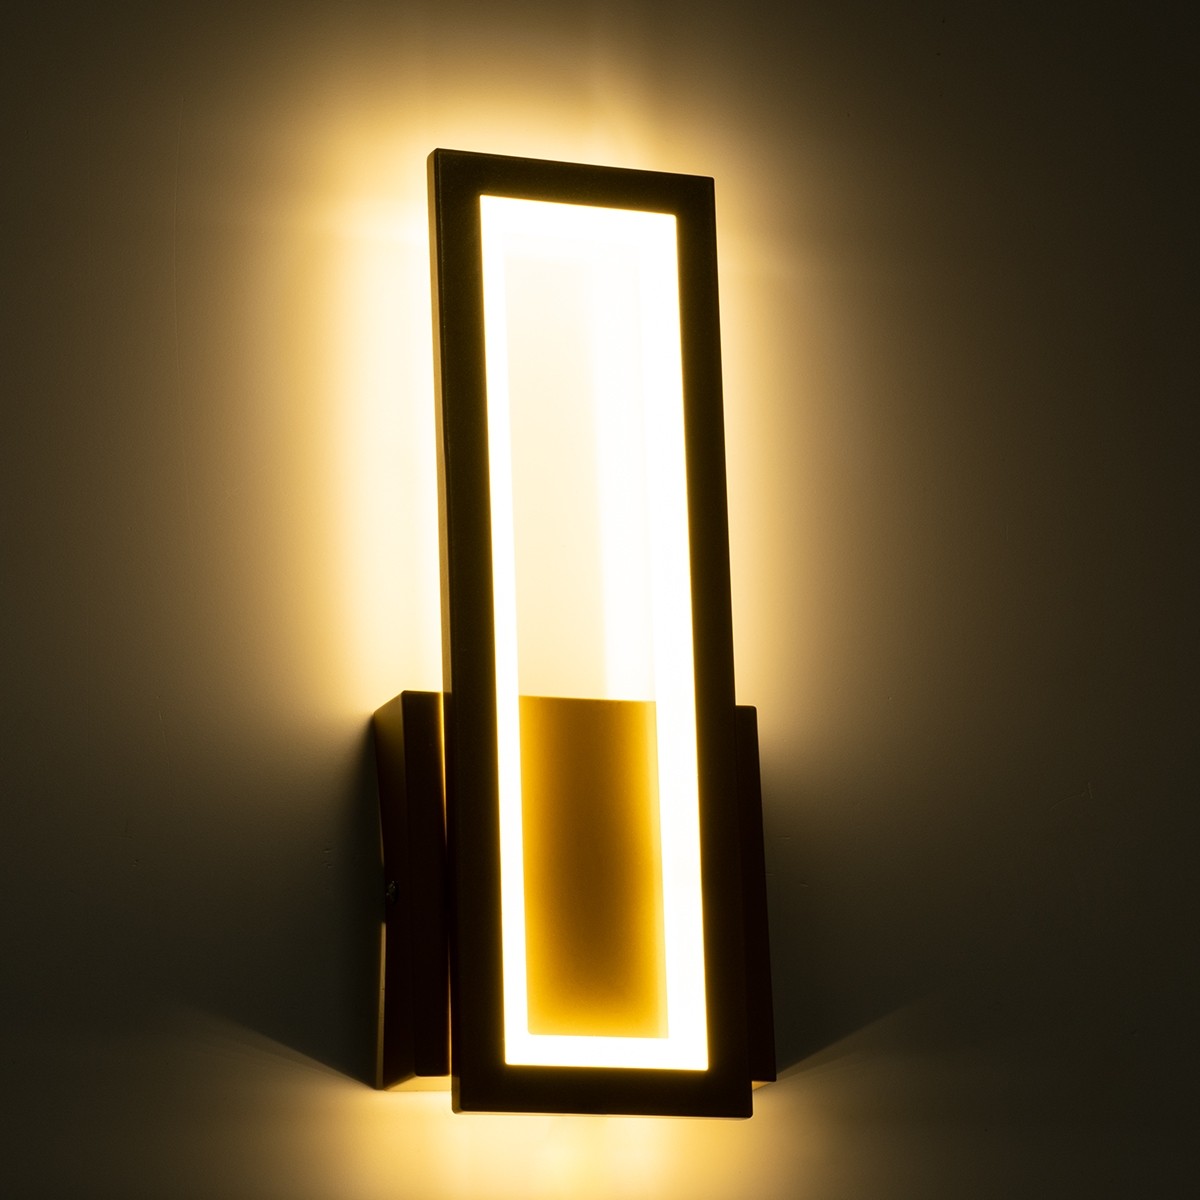 LED Φωτιστικό Τοίχου - Απλίκα Χρυσή TIARA 12W με Εναλλαγή Φωτισμού μέσω Διακόπτη On/Off Μ12.5 x Π4 x Υ32cm 61328